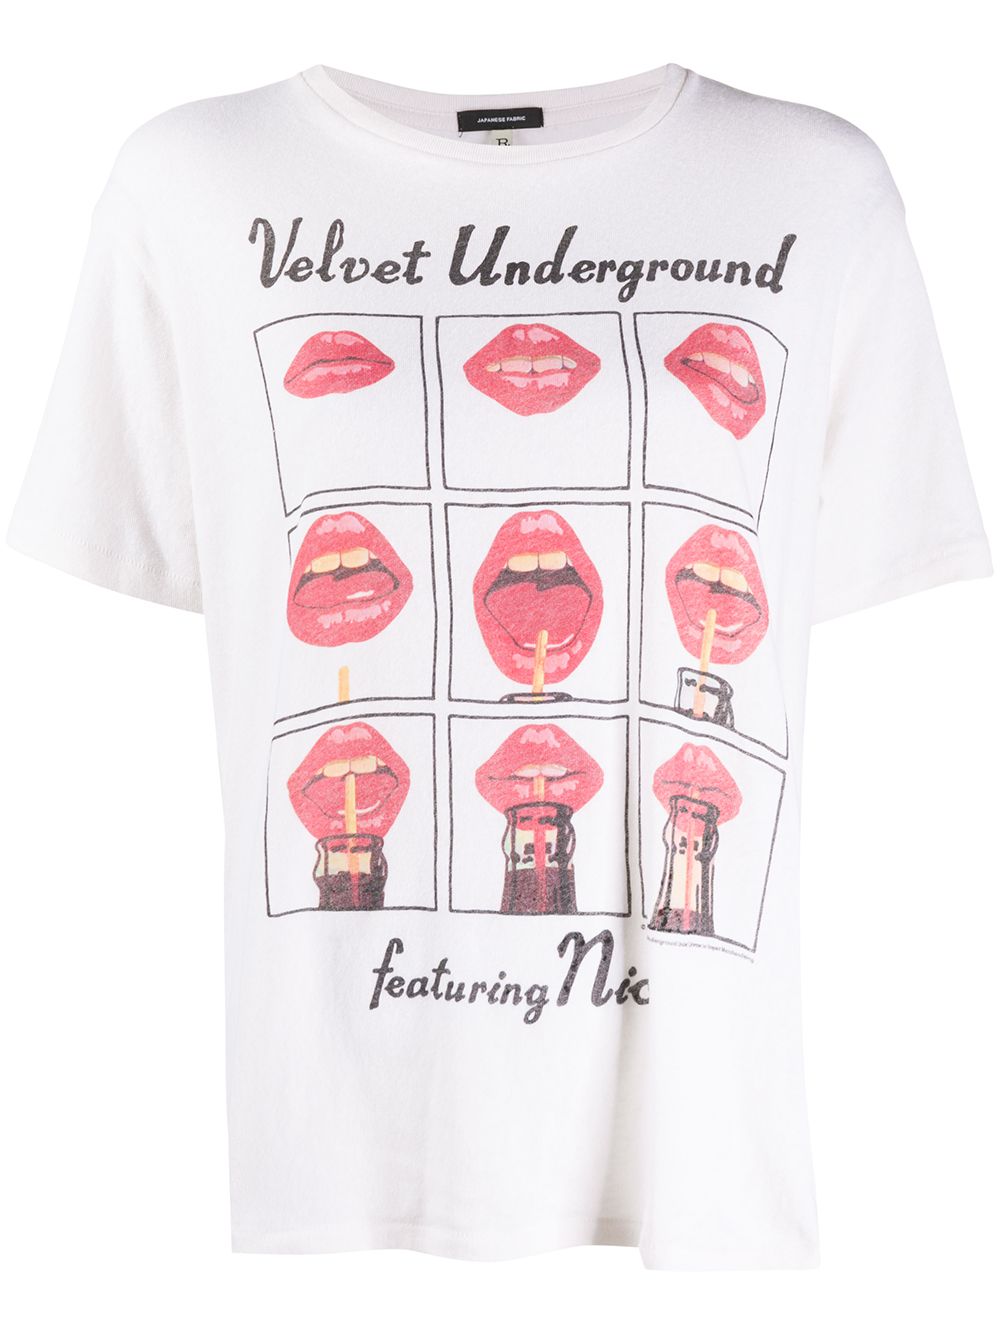 фото R13 футболка velvet underground с графичным принтом